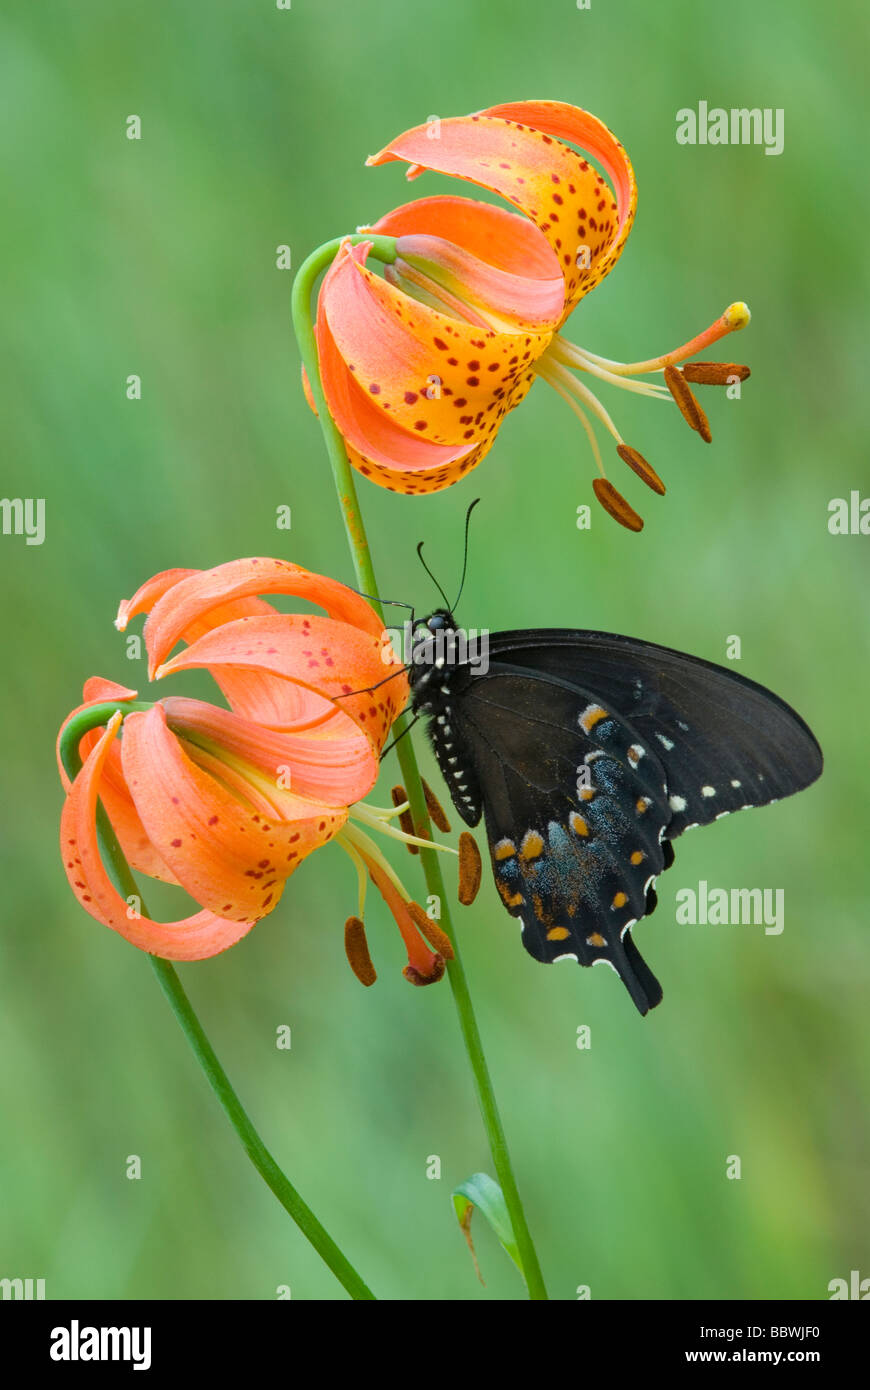 E Schwalbenschwanz Schmetterling Papilio polyxenes auf Michigan Lily Lilium michiganense E USA, durch Überspringen Moody/Dembinsky Foto Assoc Stockfoto